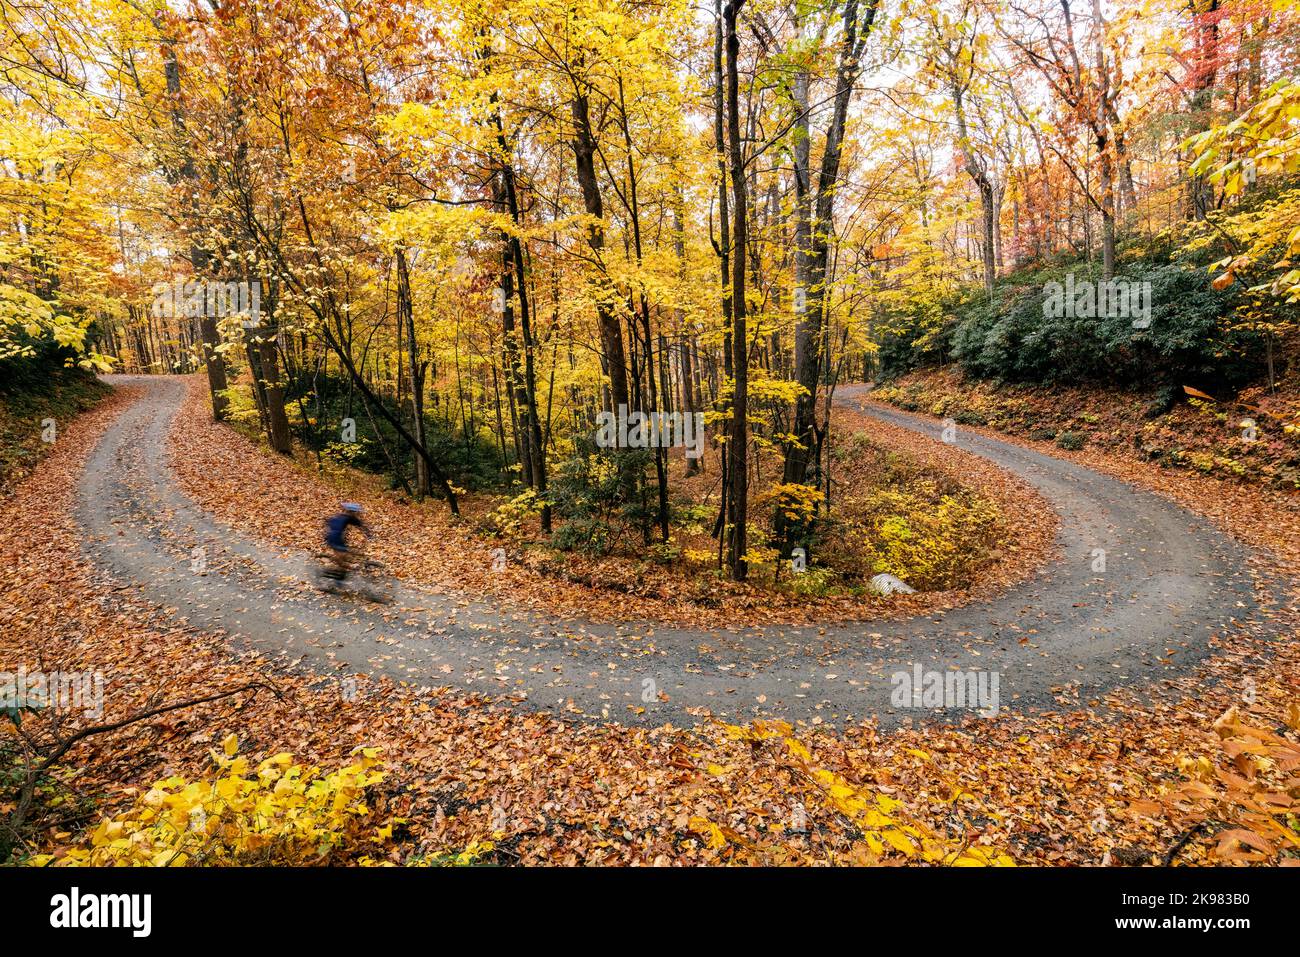 Cycliste sur une route sinueuse de gravier à travers le feuillage d'automne vibrant dans la forêt nationale de Pisgah, Brevard, Caroline du Nord, États-Unis Banque D'Images